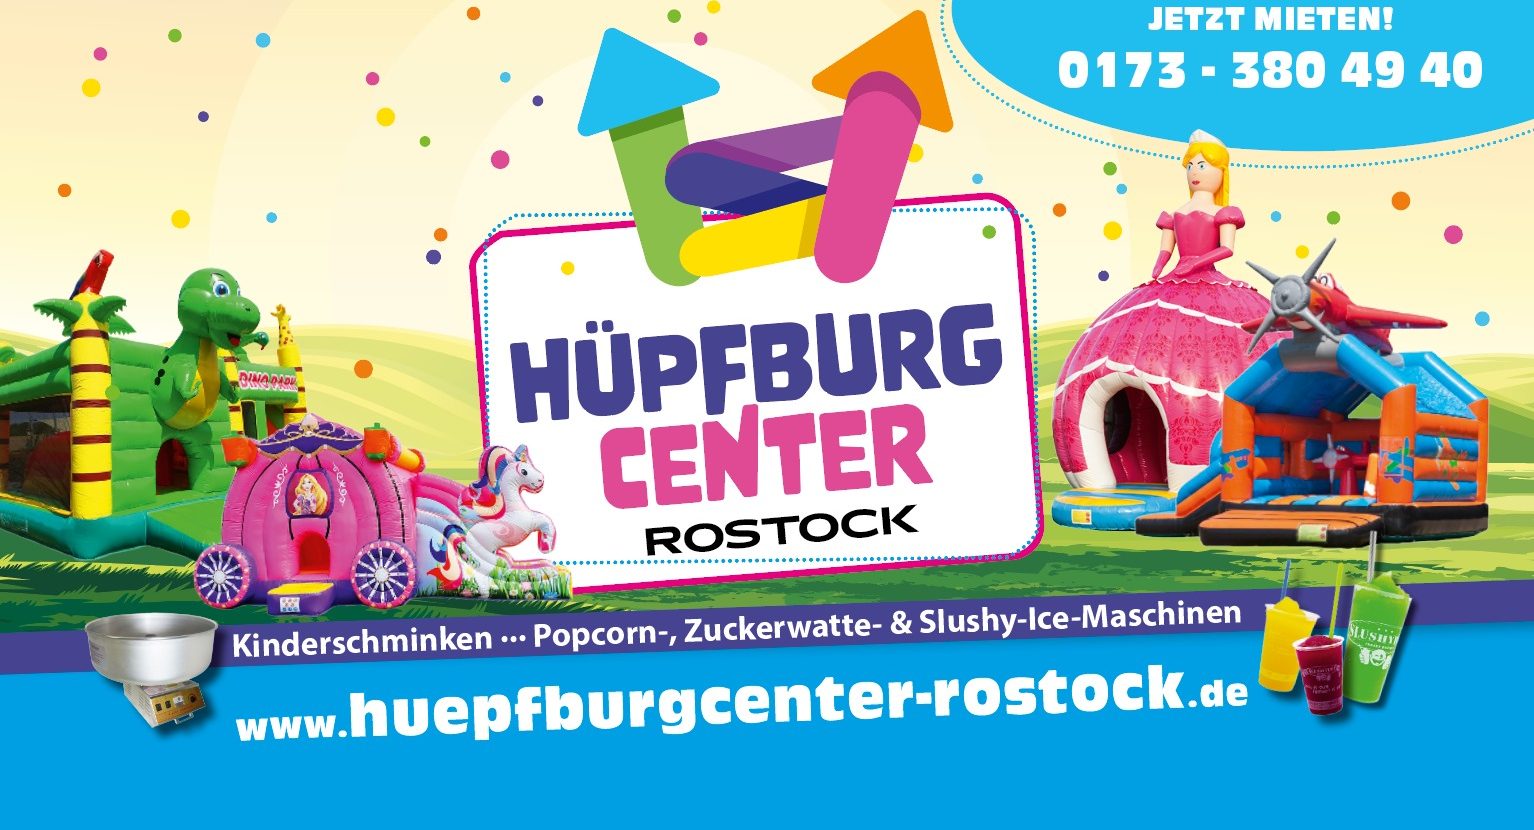 (c) Huepfburgcenter-rostock.de